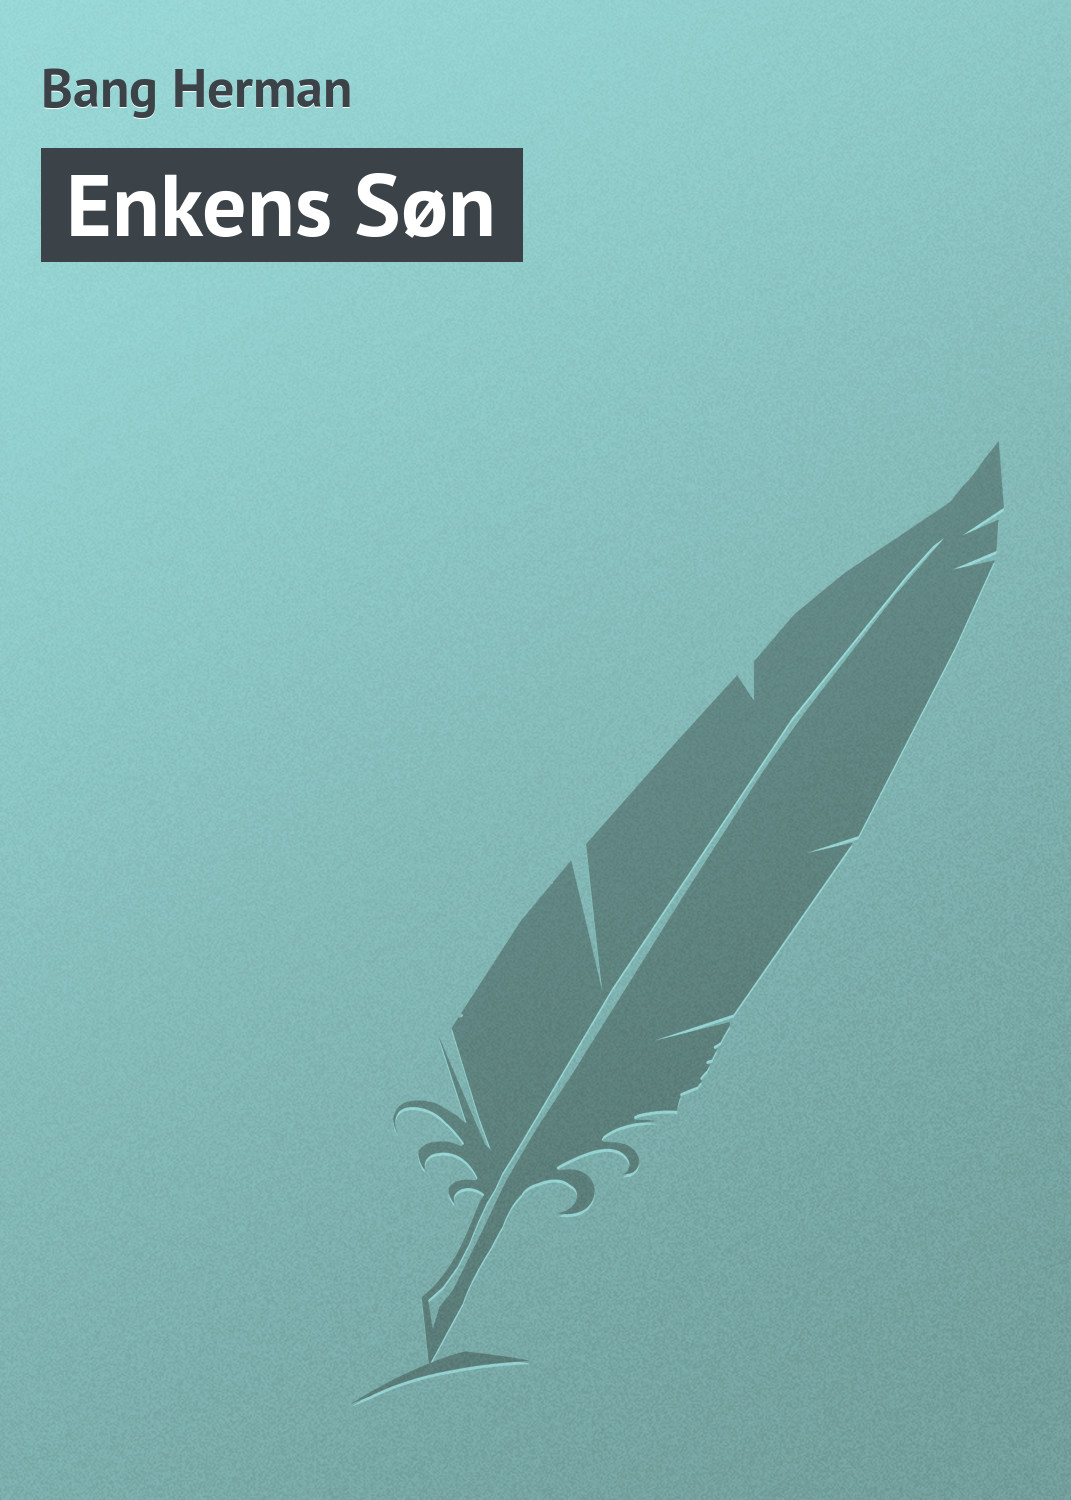 Книга Enkens Søn из серии , созданная Bang Herman, может относится к жанру Зарубежная старинная литература, Зарубежная классика. Стоимость электронной книги Enkens Søn с идентификатором 21106422 составляет 5.99 руб.